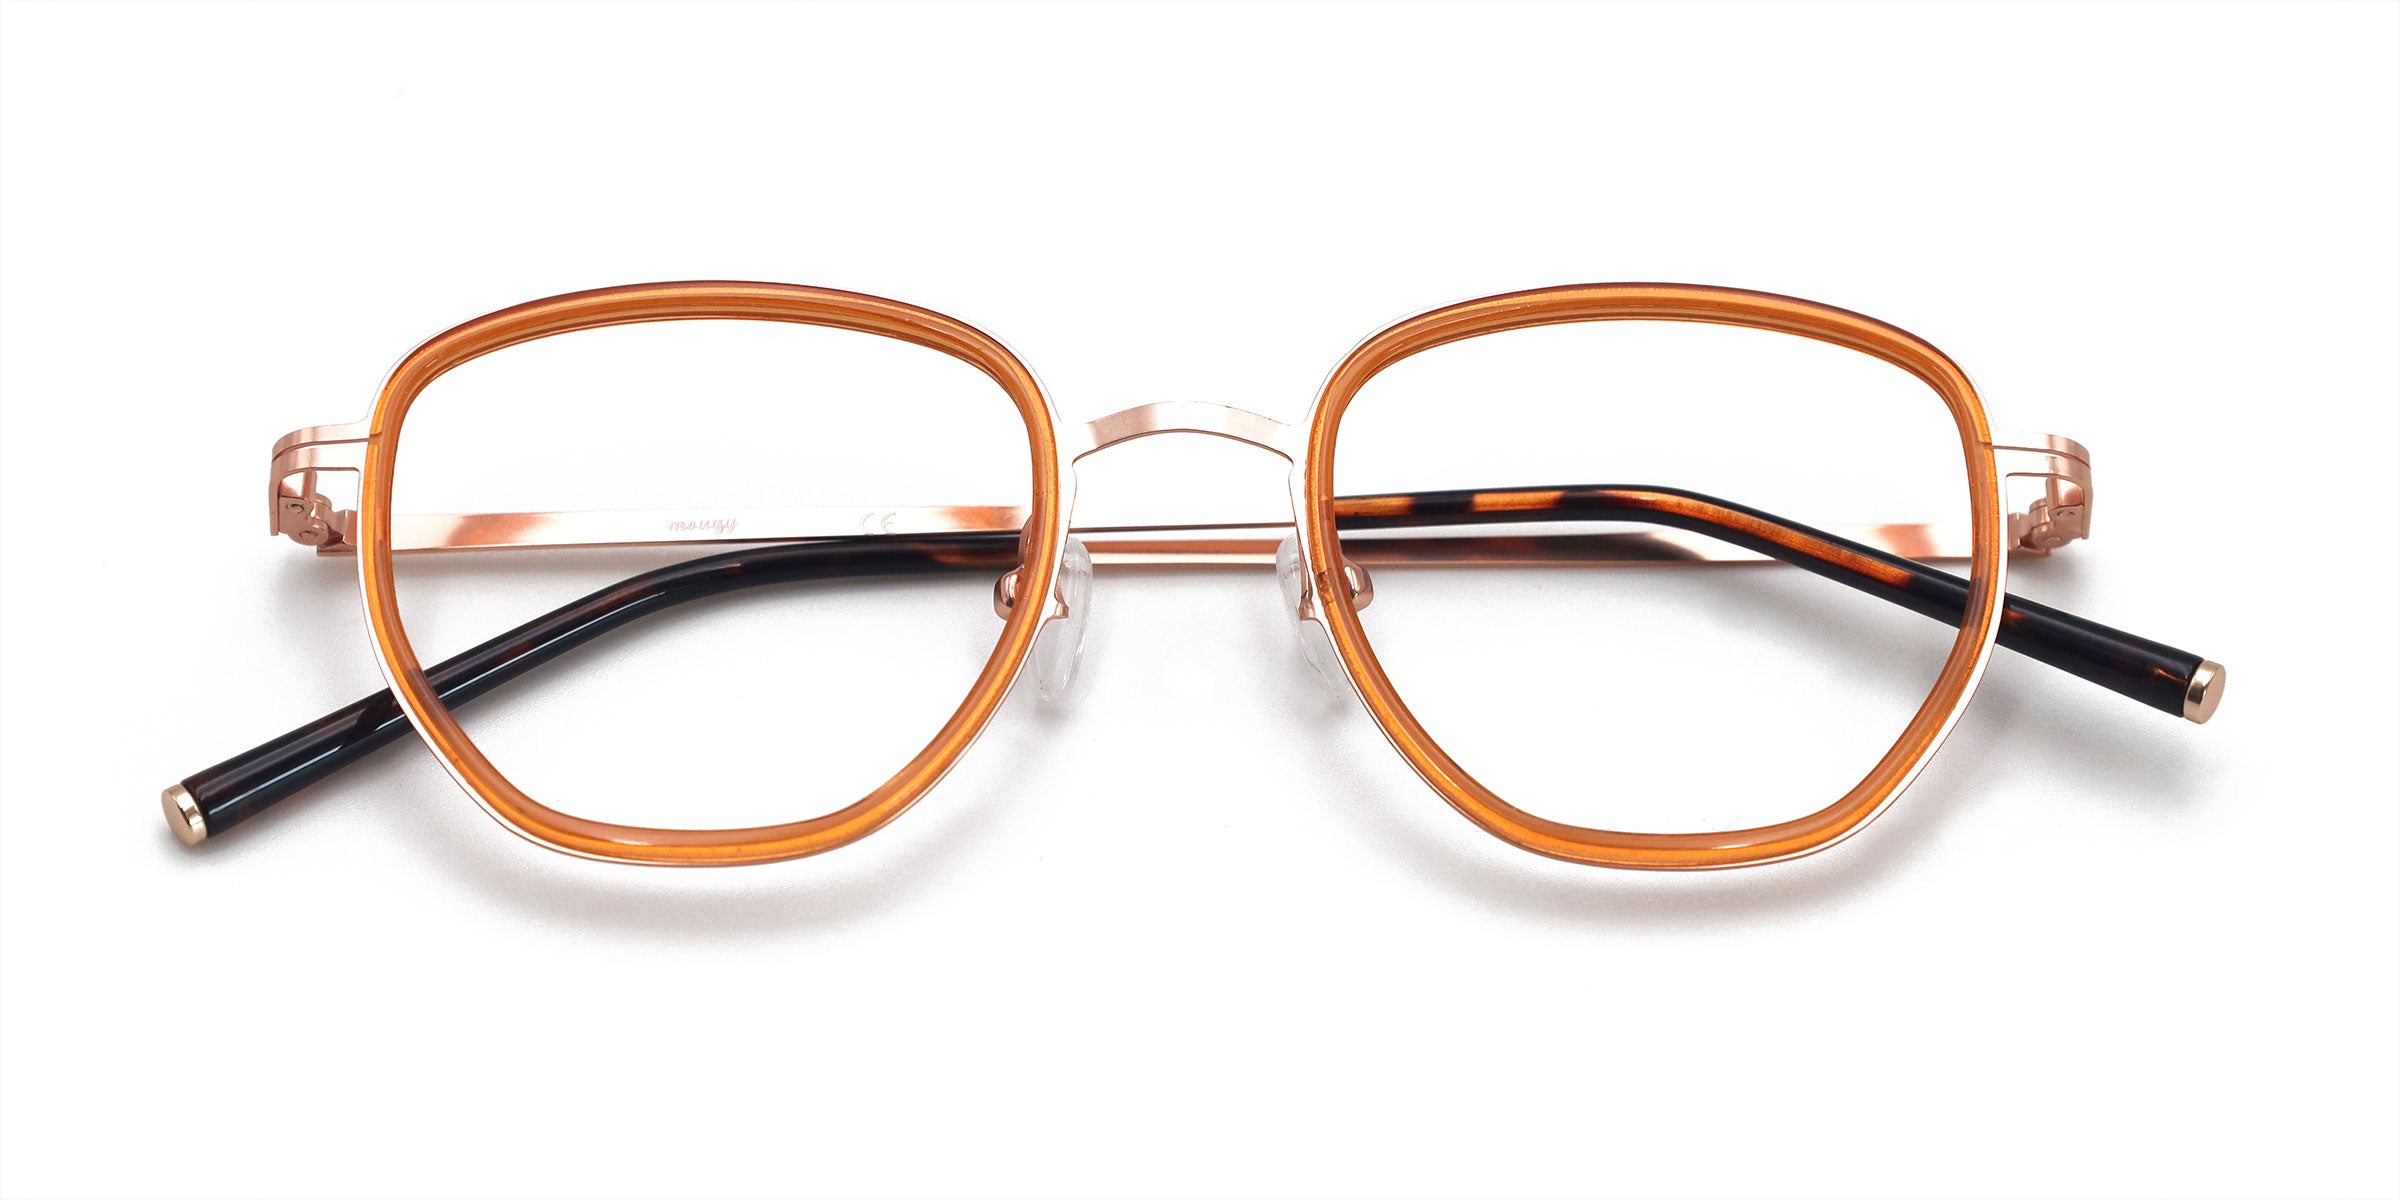 glee geometric orange eyeglasses frames top view